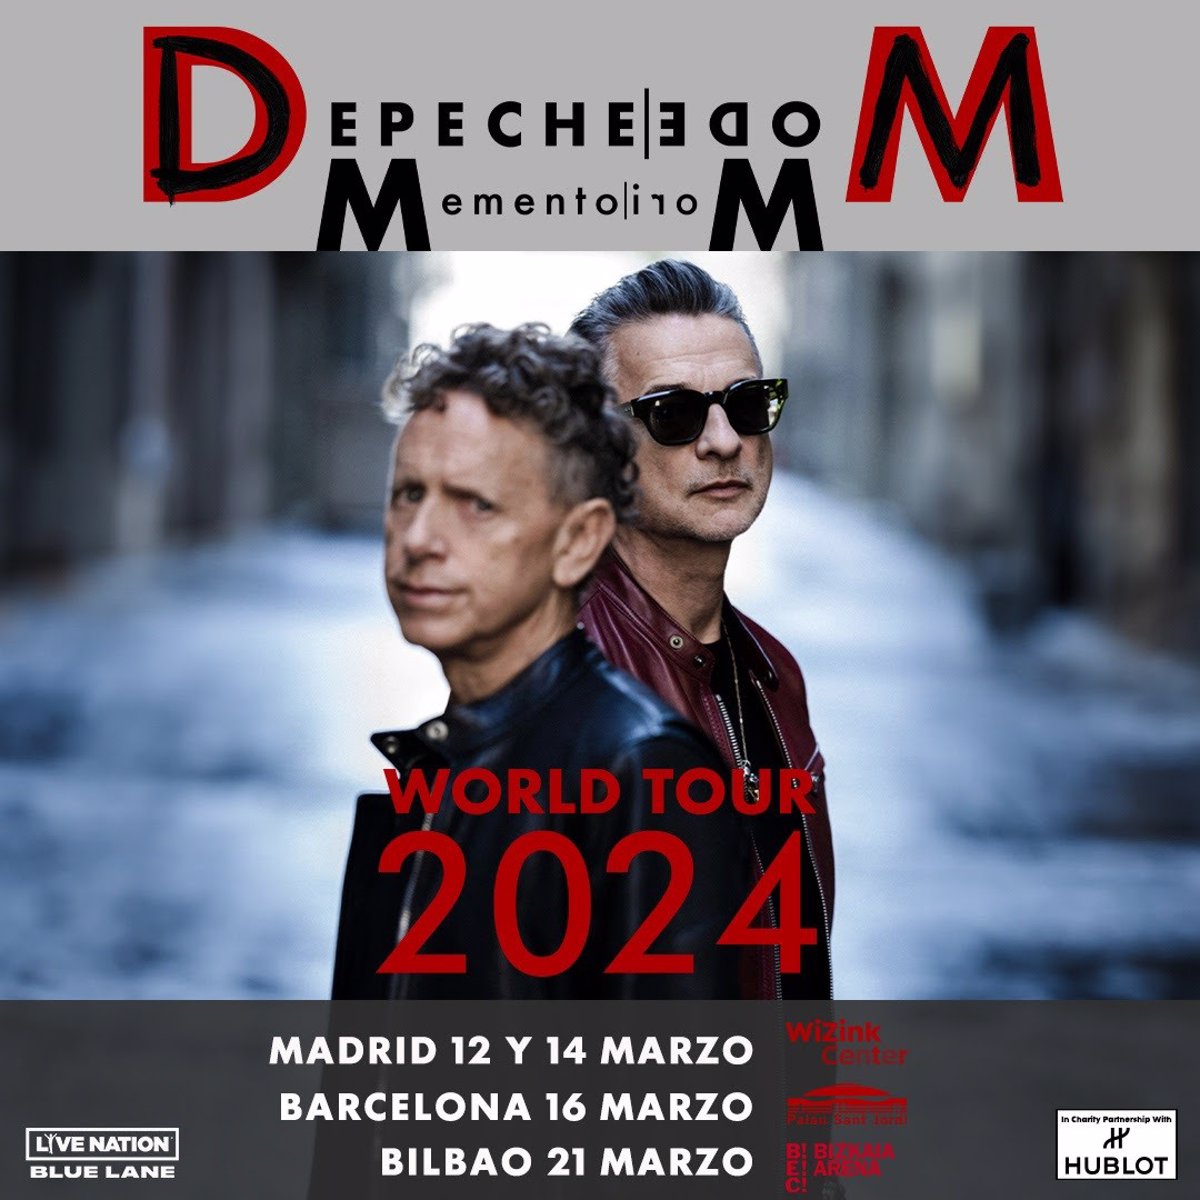 Depeche Mode actuarán en Madrid, Barcelona y Bilbao en marzo de 2024